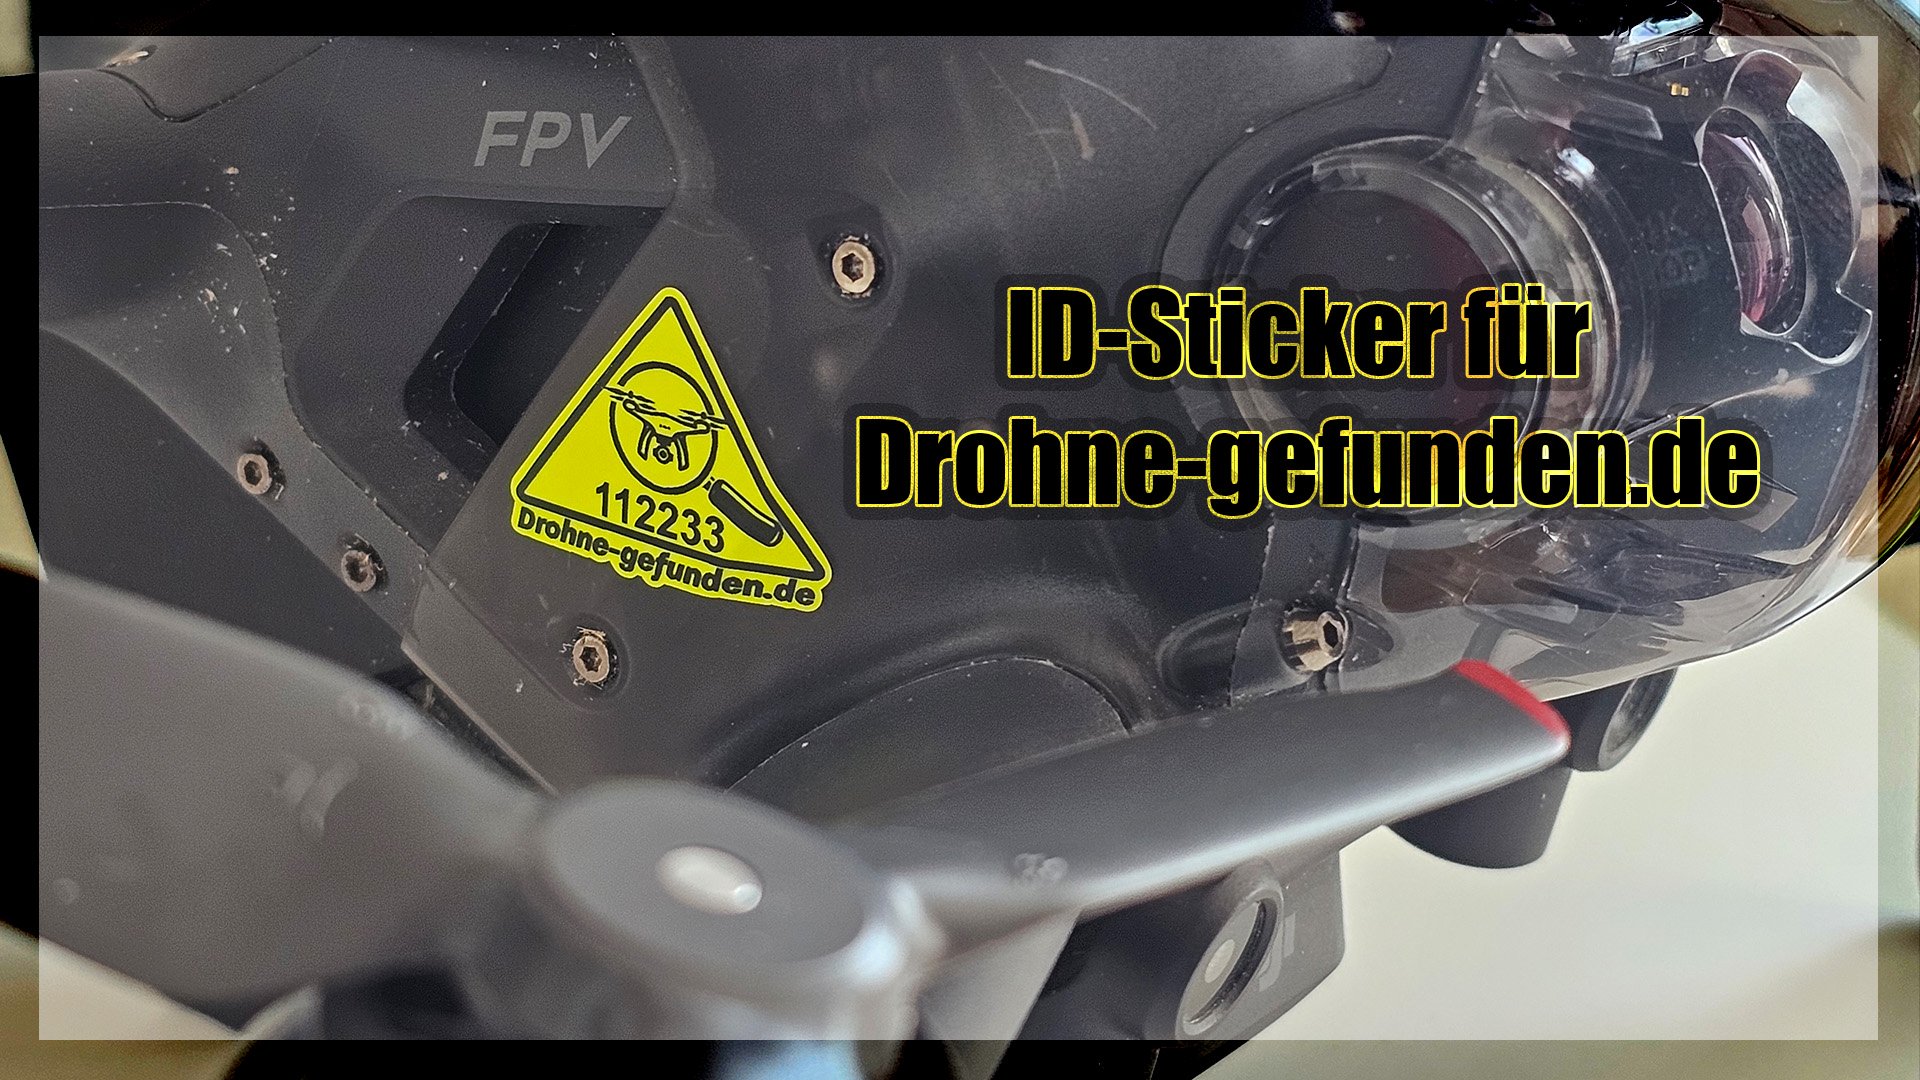 1x Drohne-gefunden.de ID-Sticker 